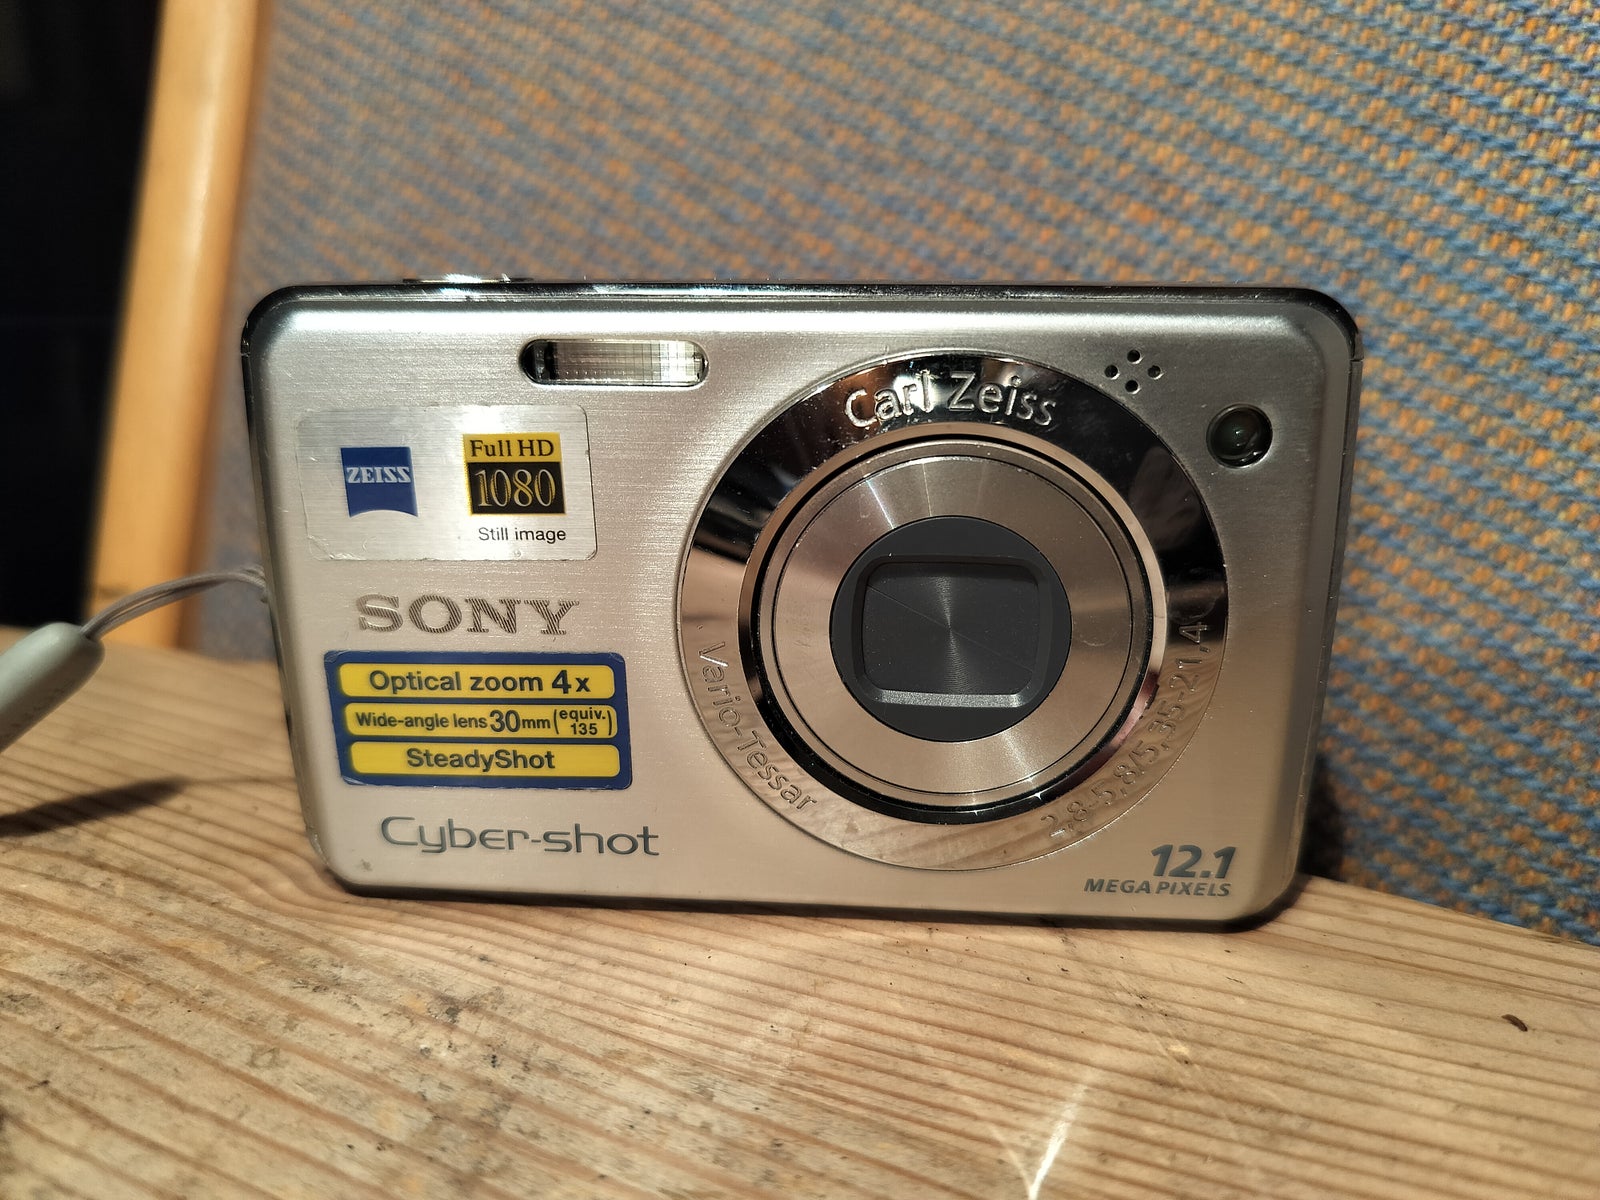 Sony, DSC-W210, 12.1 megapixels